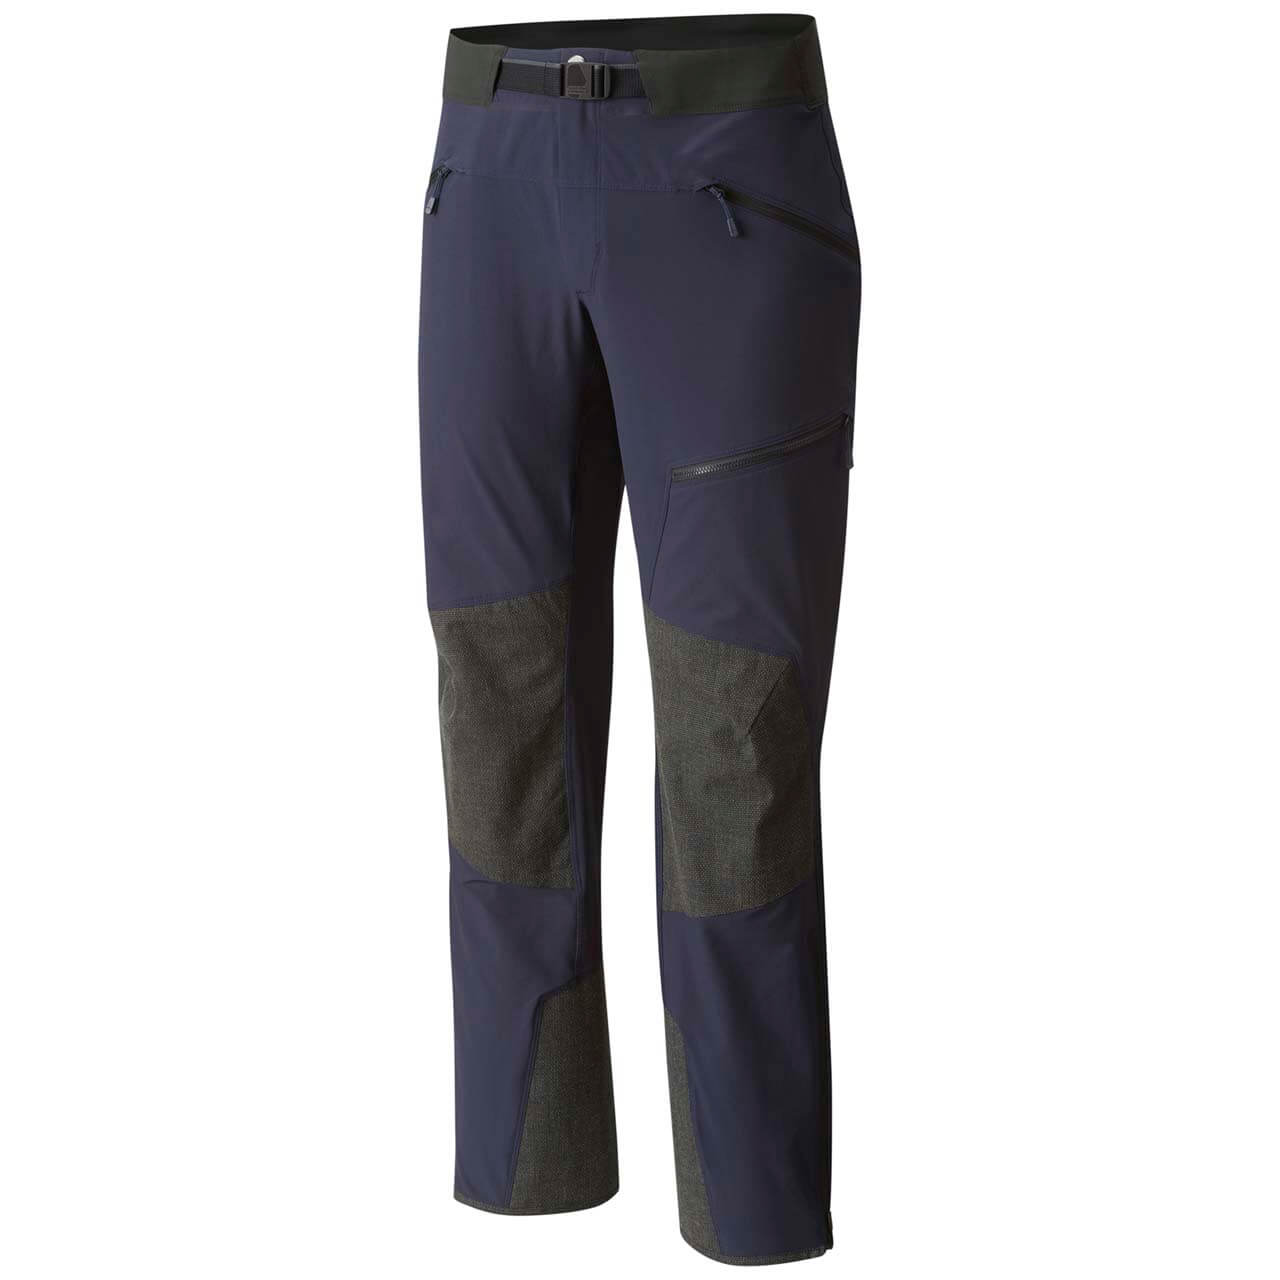 Mountain Hardwear Touren Pants - Dark Zinc, L